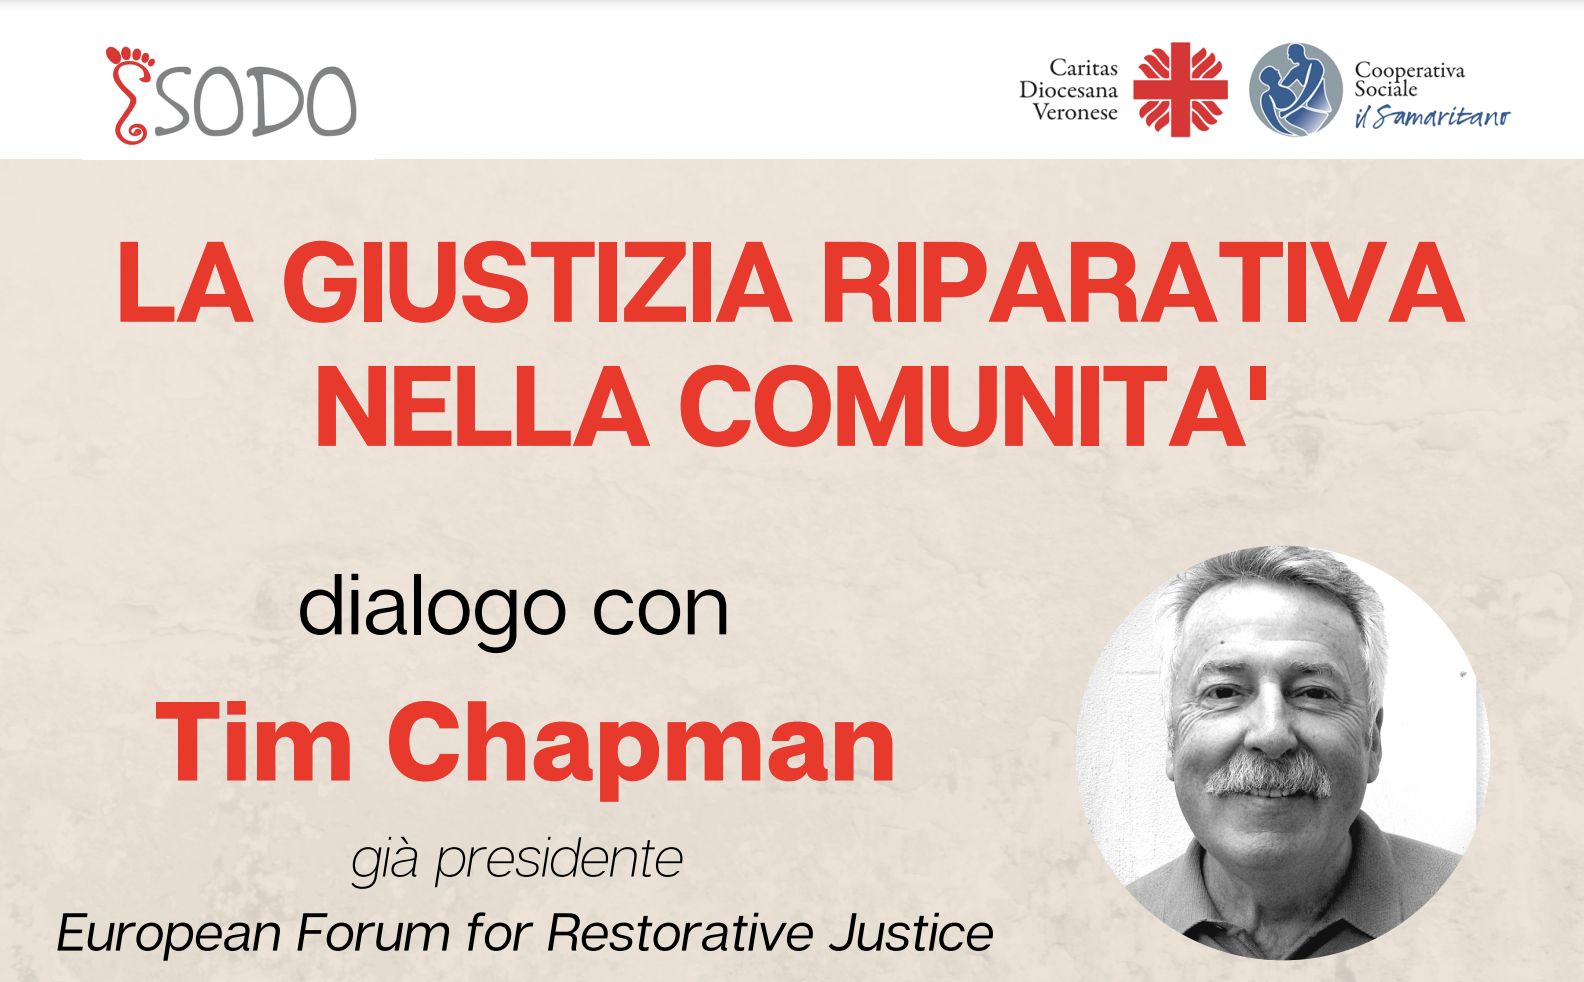 La giustizia riparativa nella comunità, dialogo con Tim Chapman